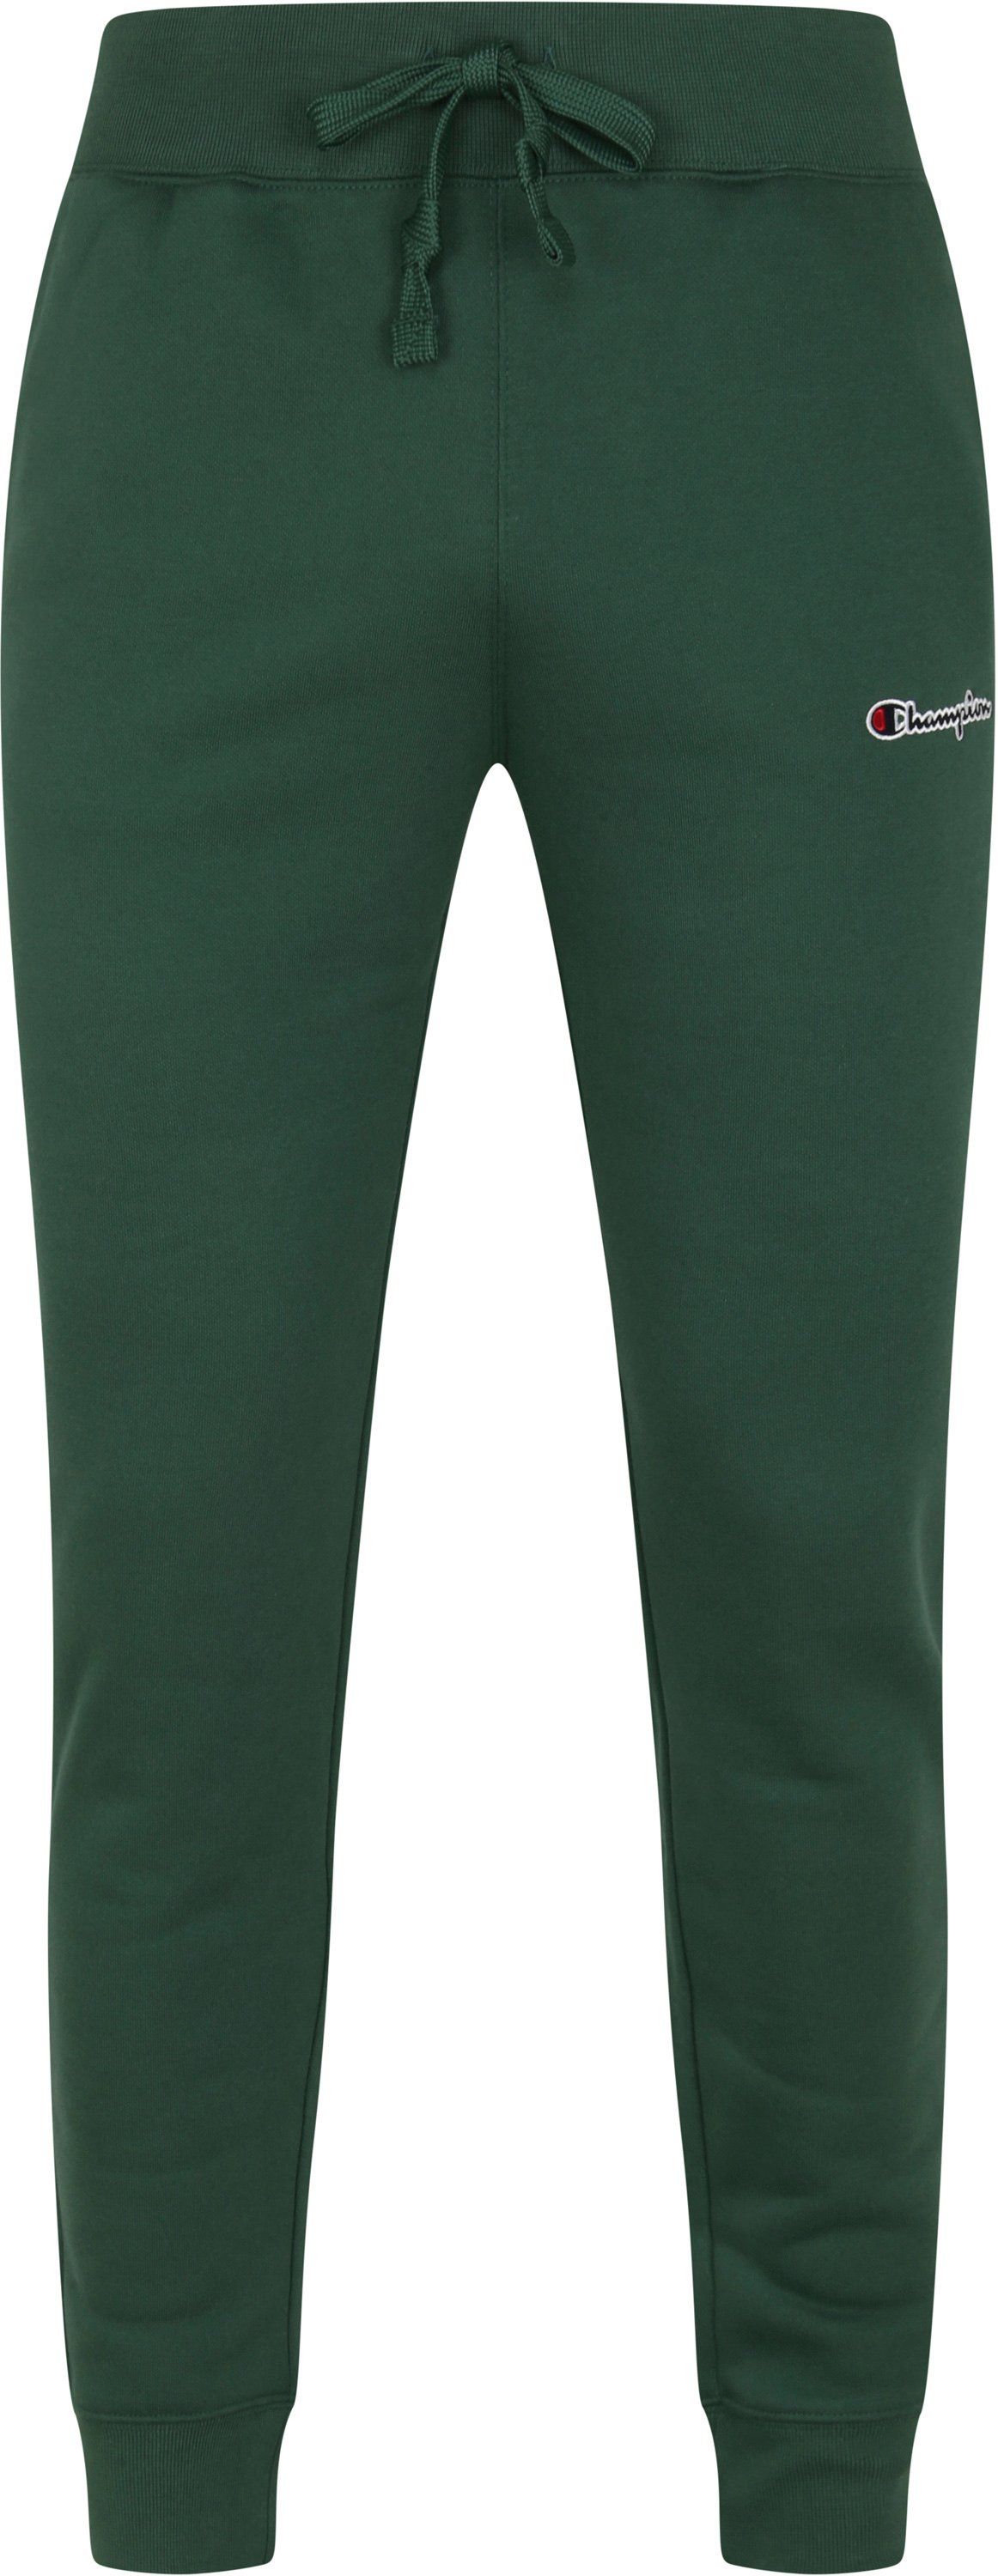 Champion Sweatpants Dark Dark Green Green size L